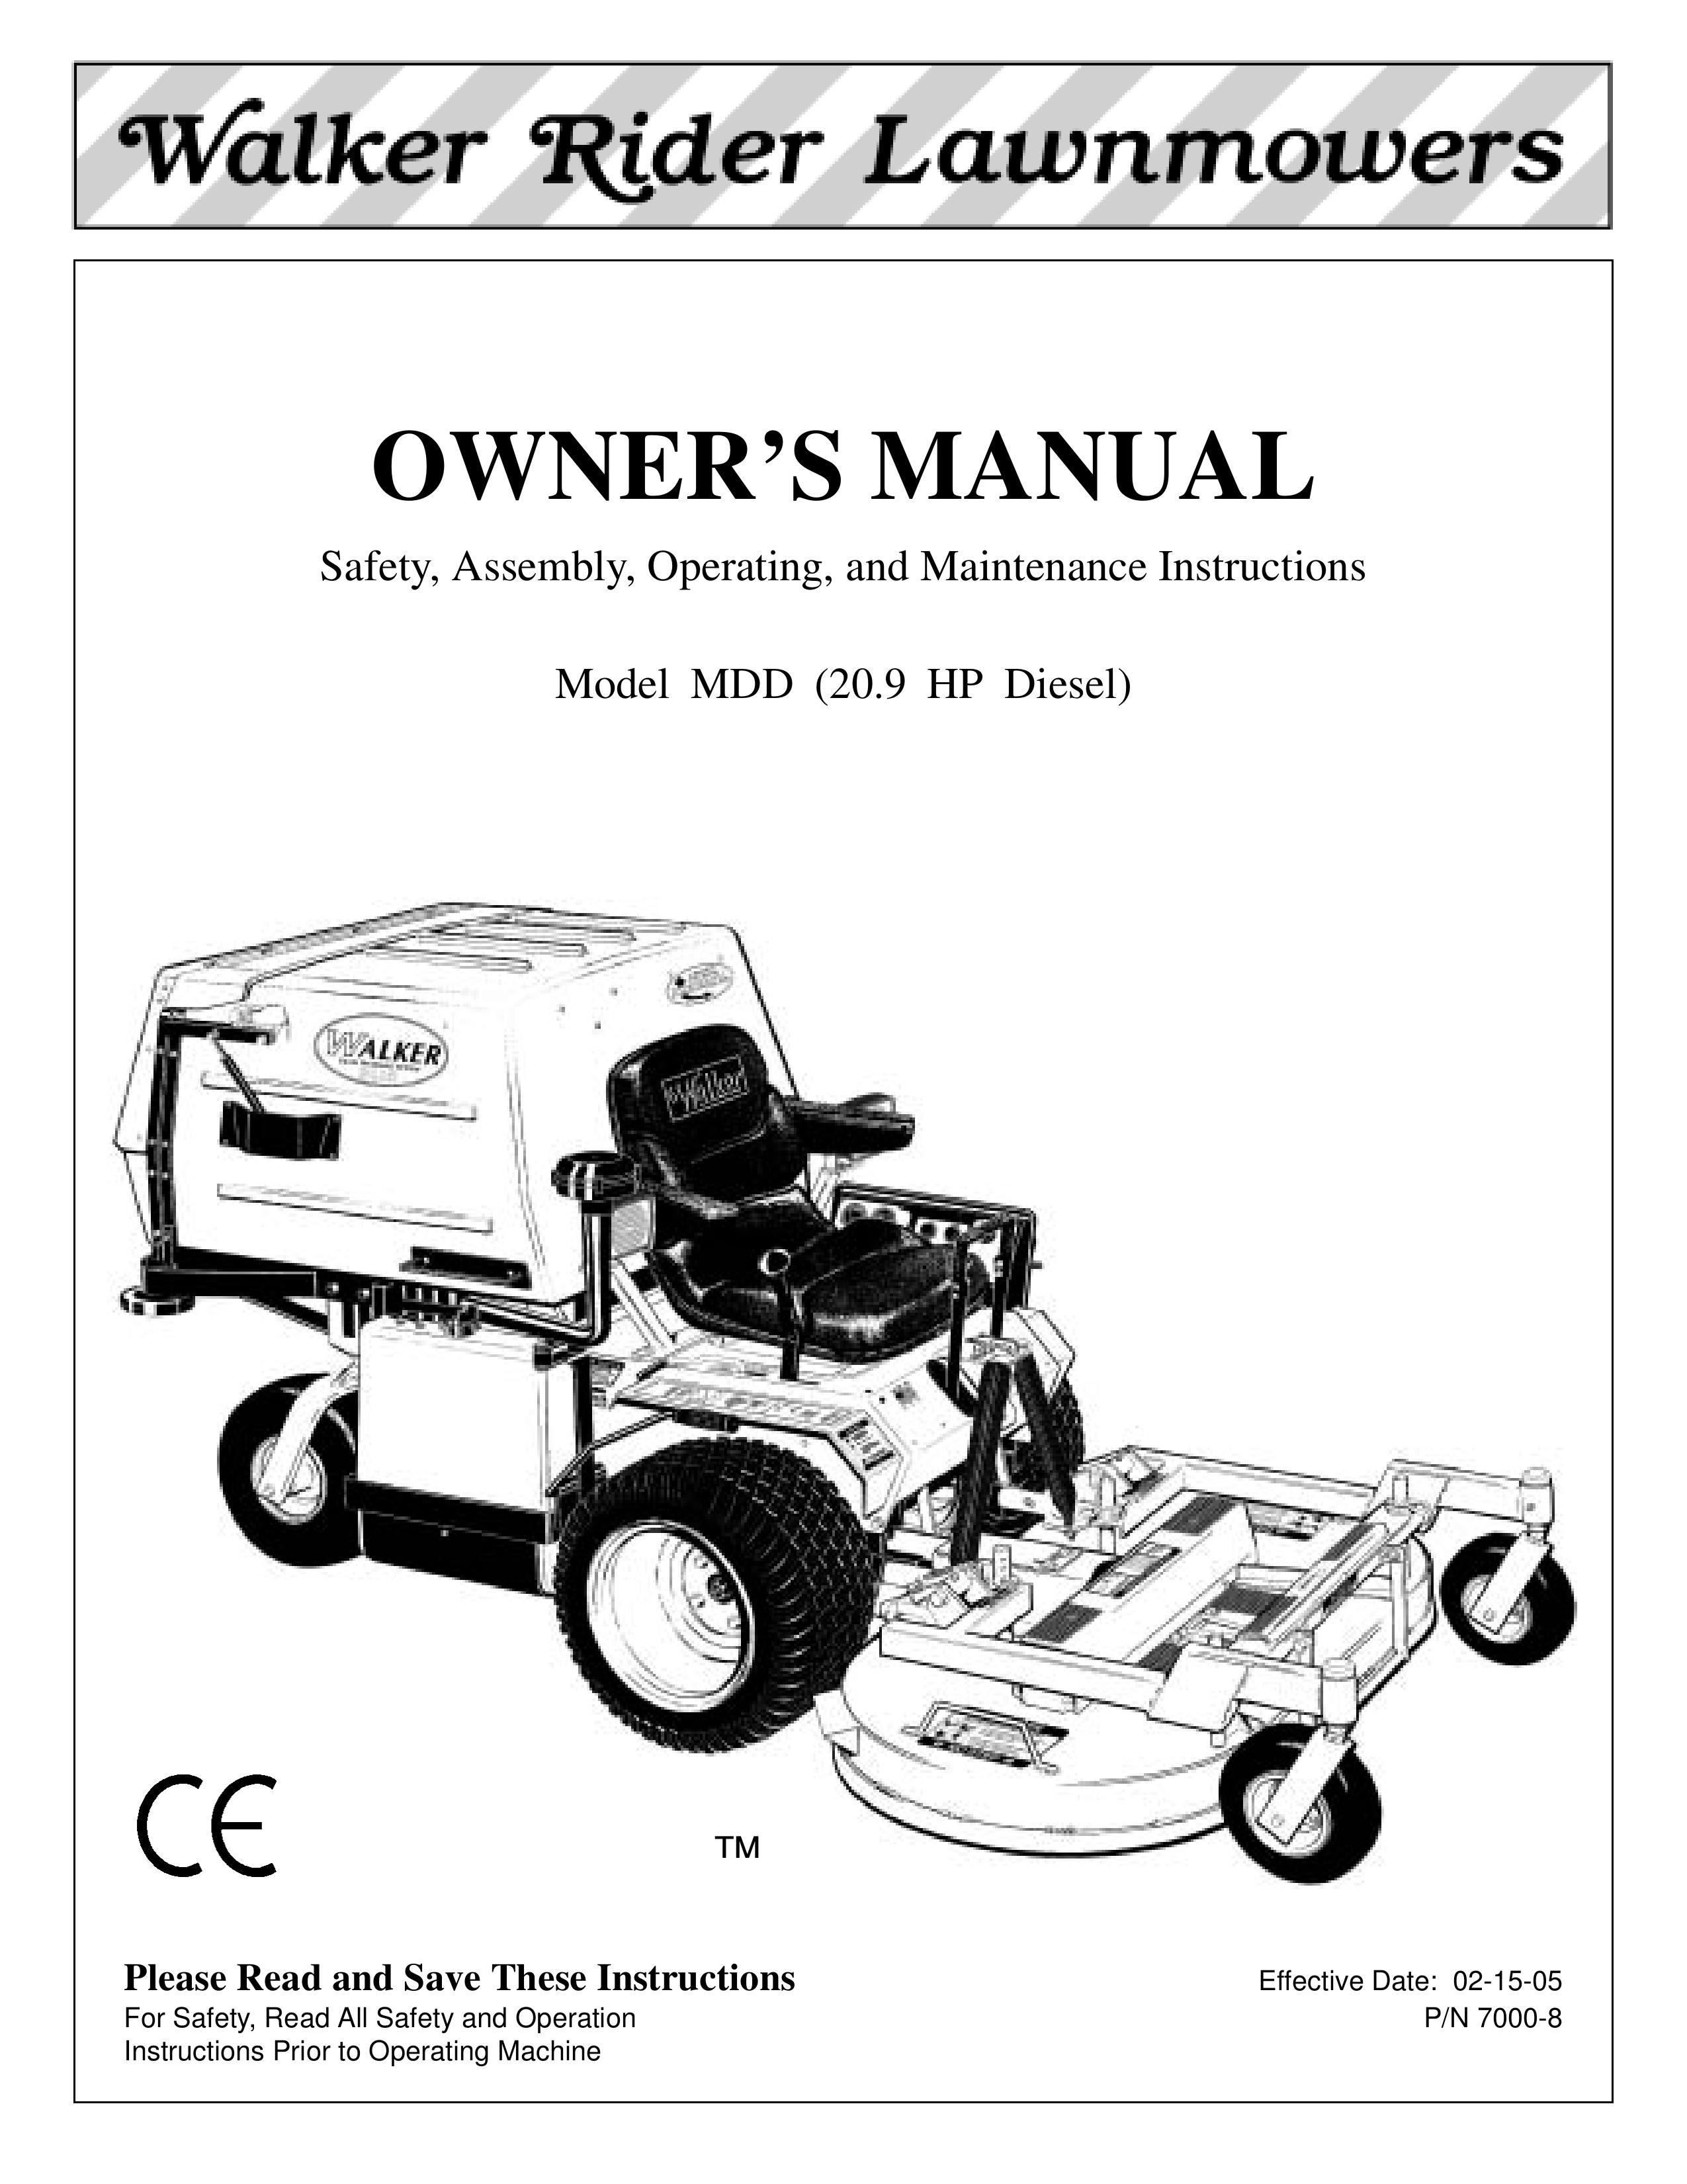 Walker MDD Lawn Mower User Manual